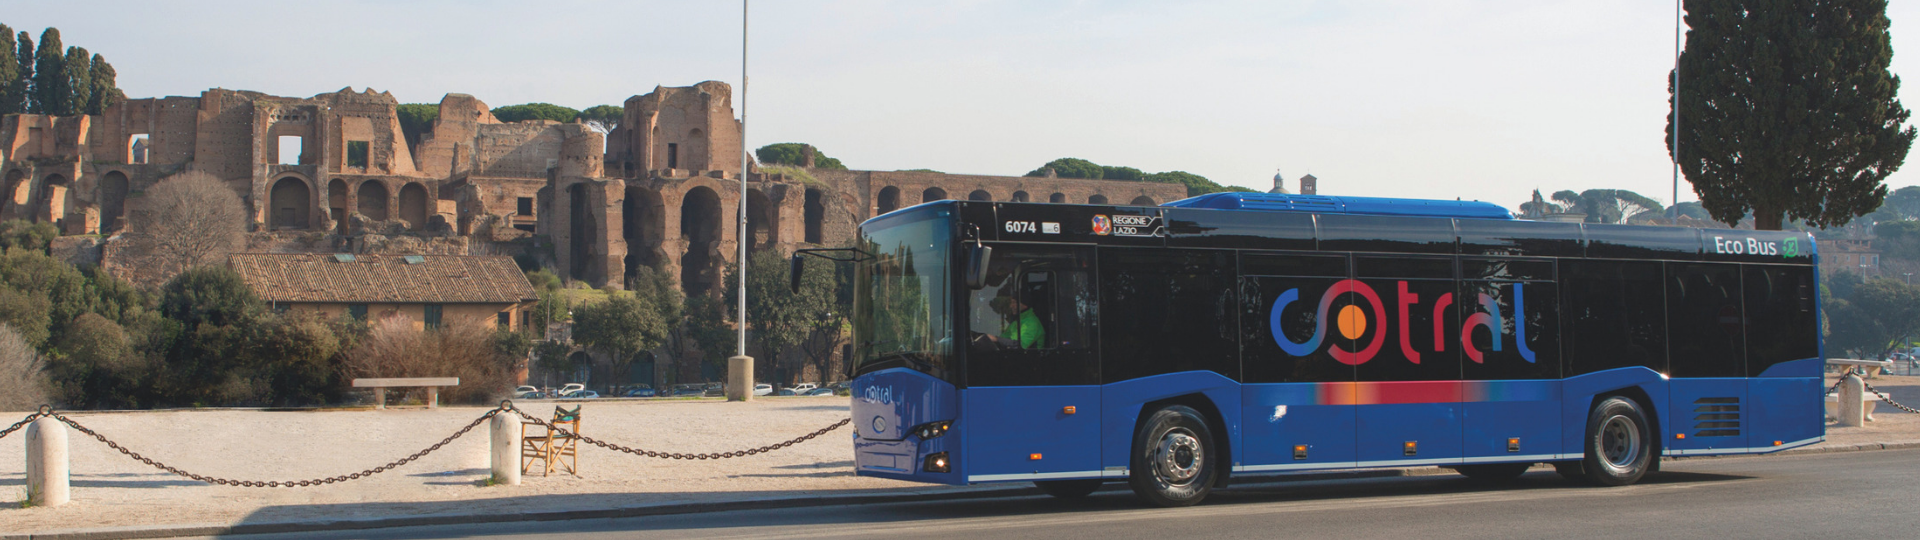 Großauftrag für Solaris. Weitere 300 Überlandbusse InterUrbino fahren nach Italien